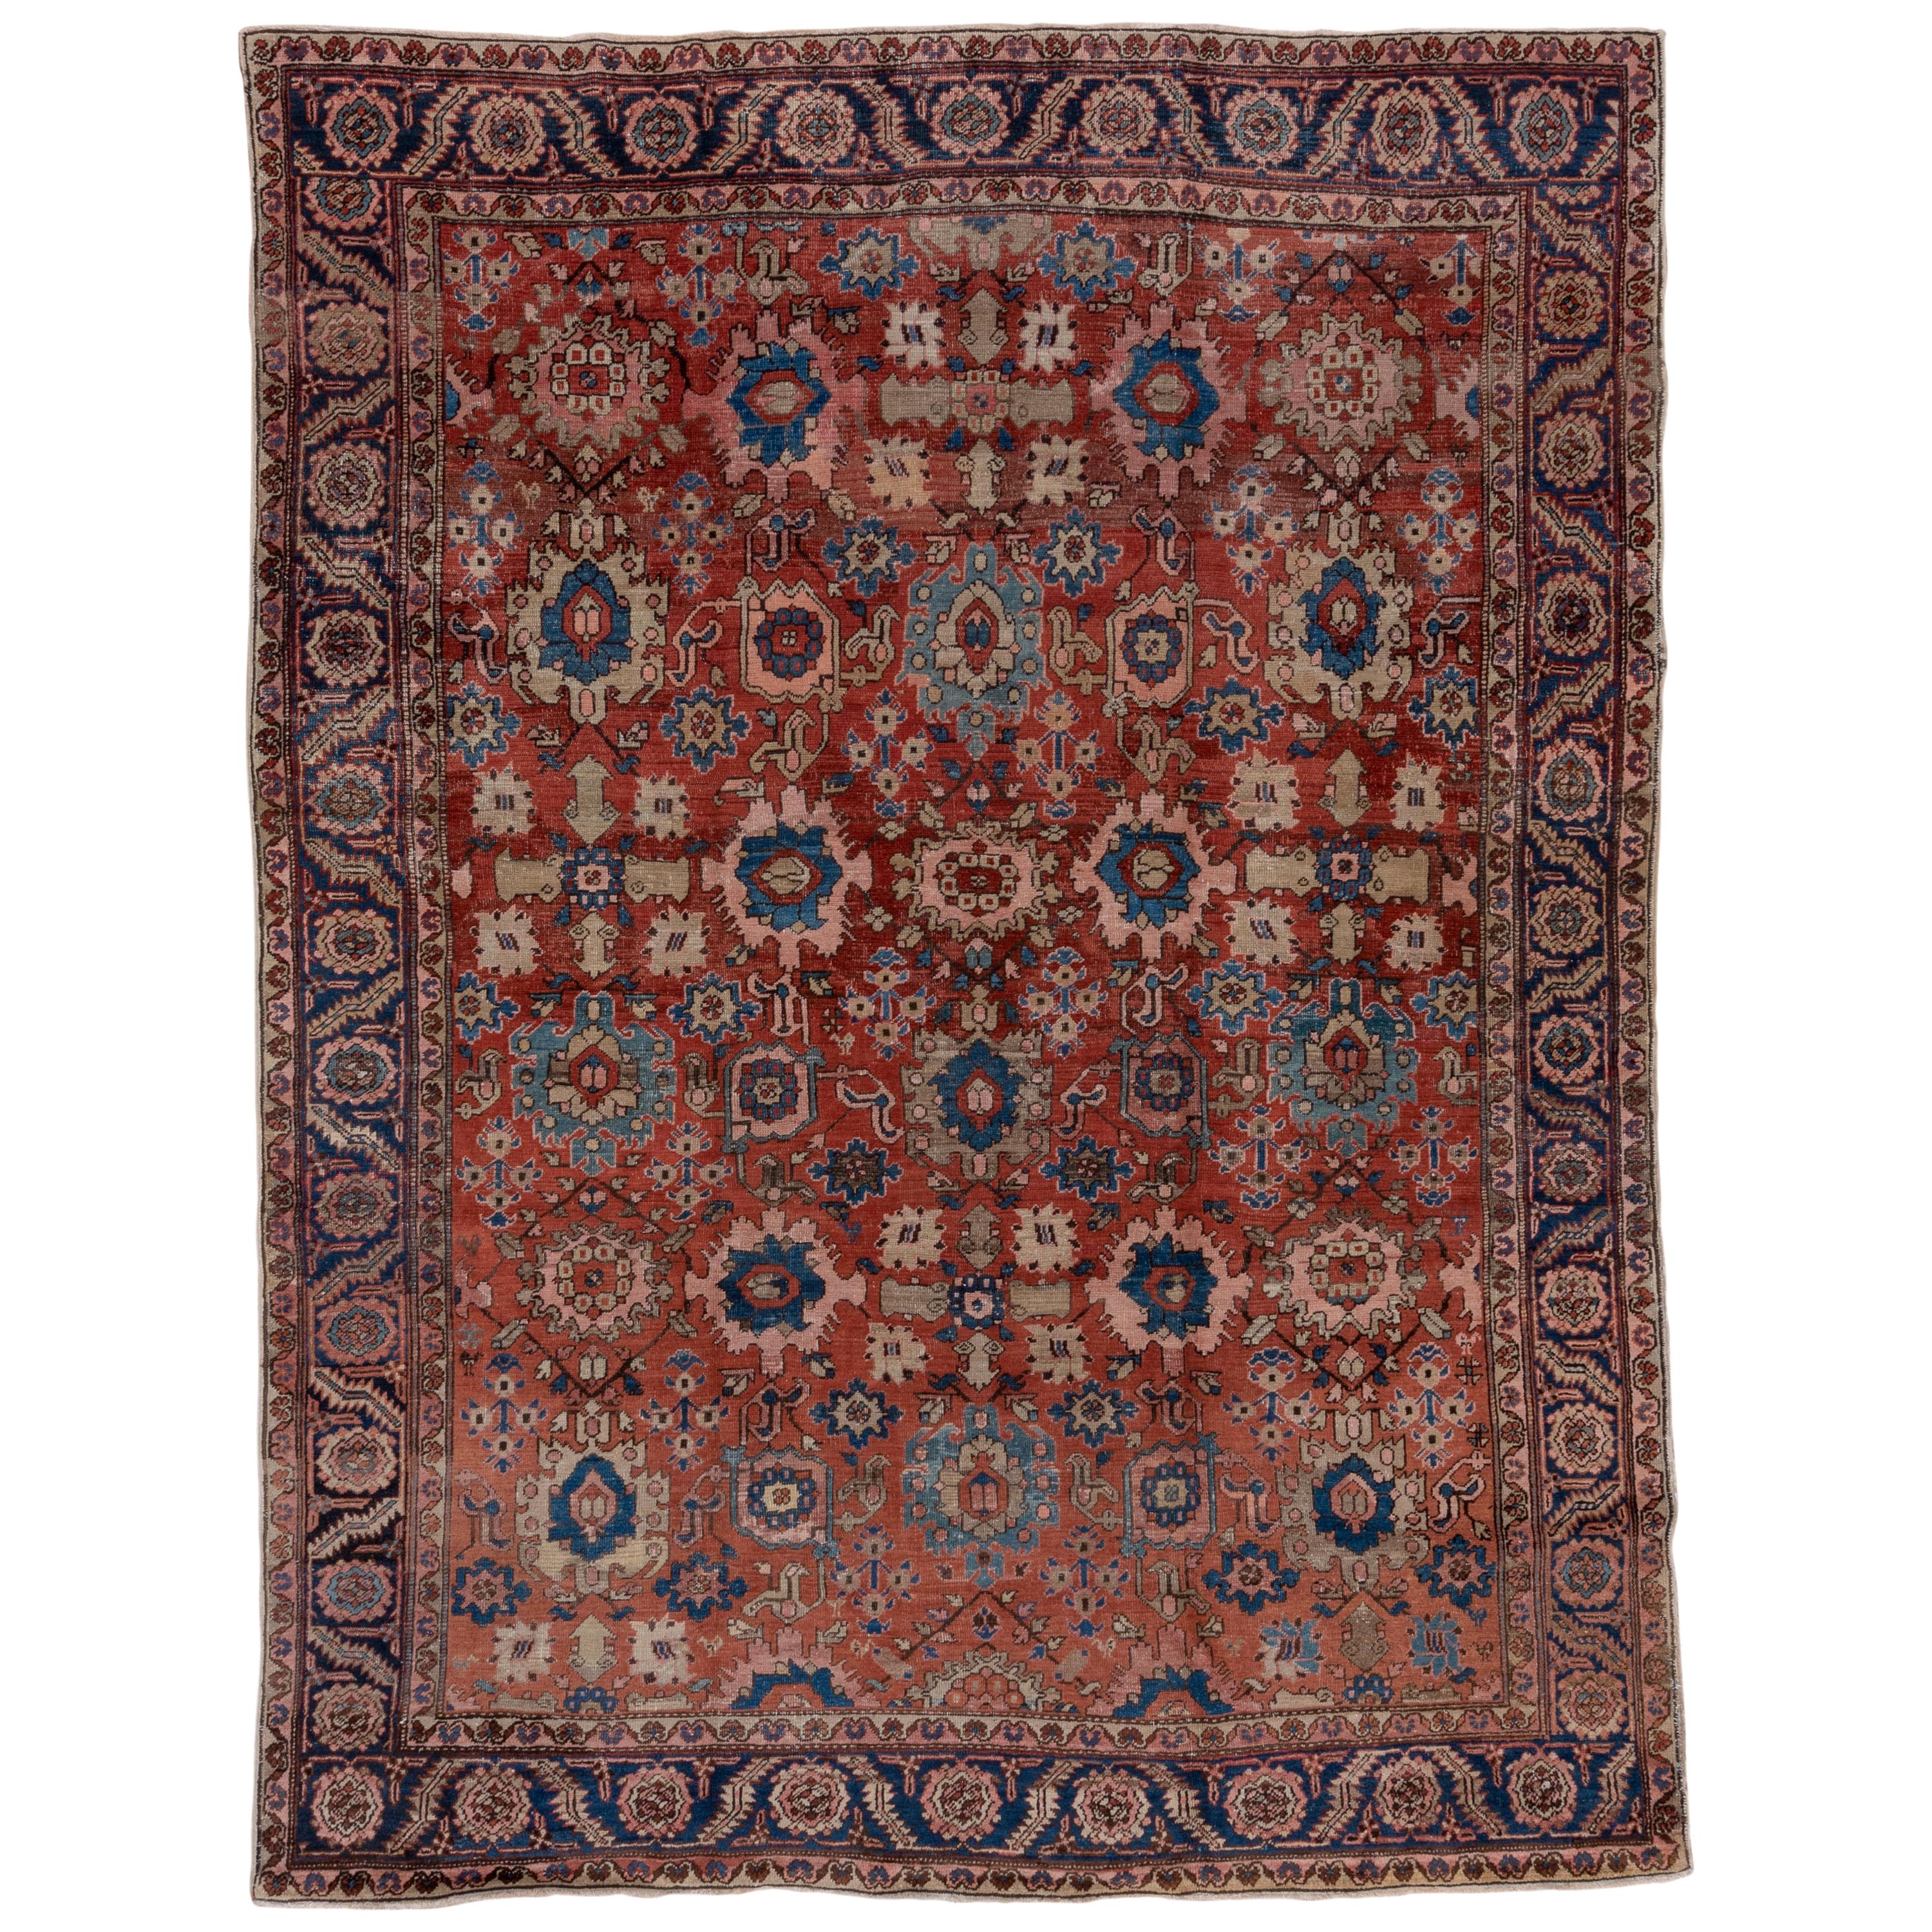 Antique Persian Heriz Carpet, Allover Field, circa 1900s